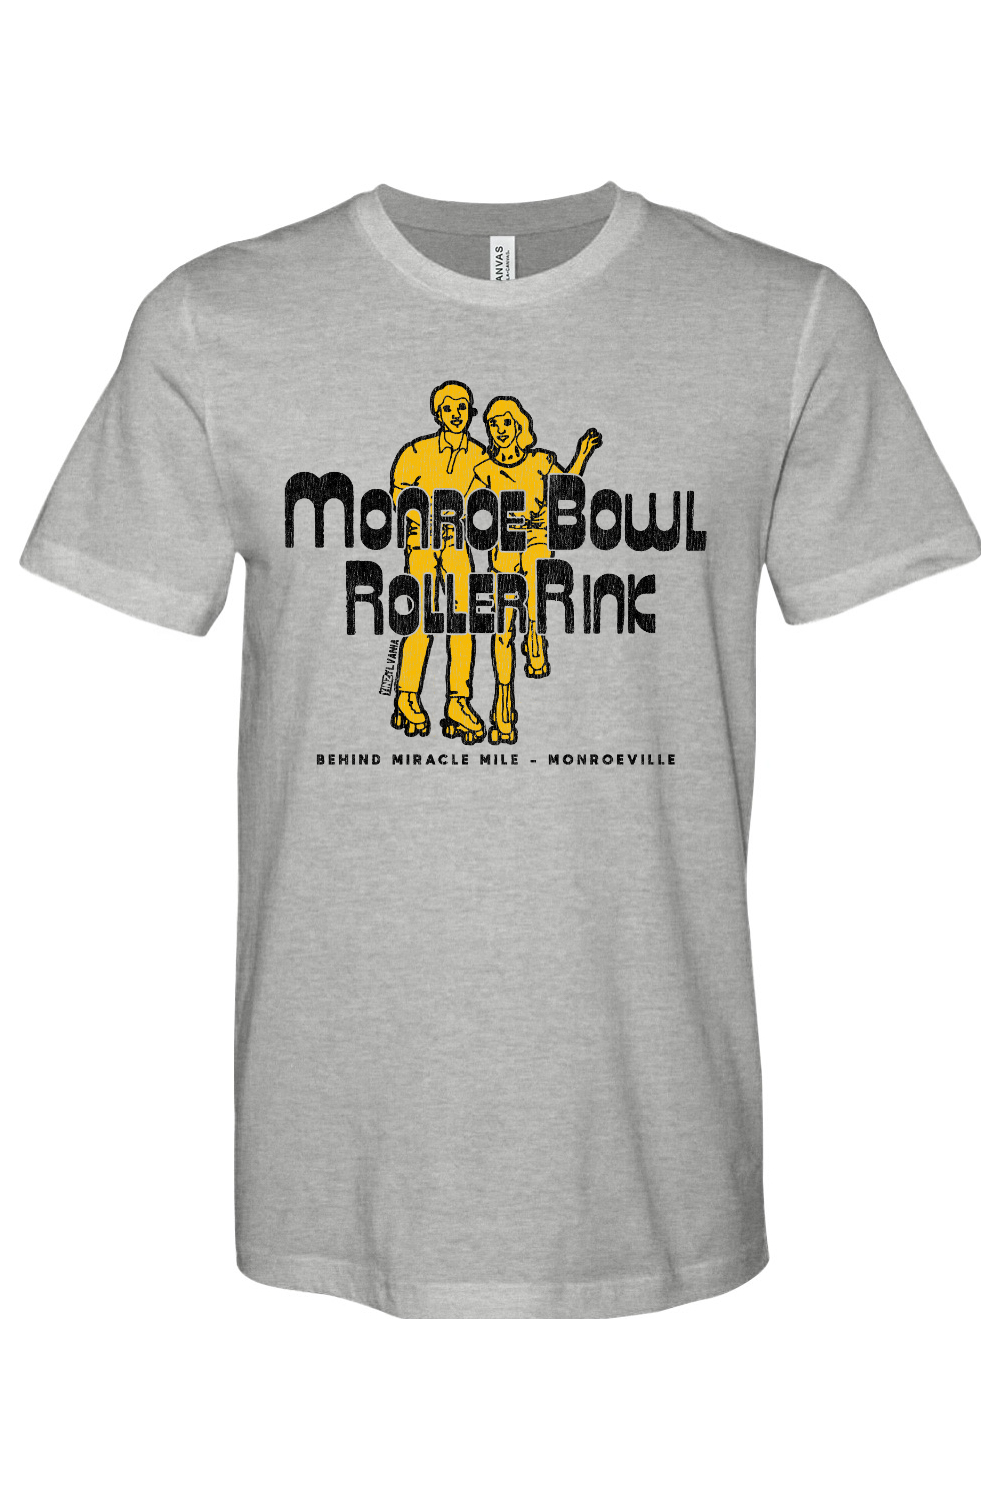 Monroe Bowl Roller Rink - Monroeville, PA - Yinzylvania